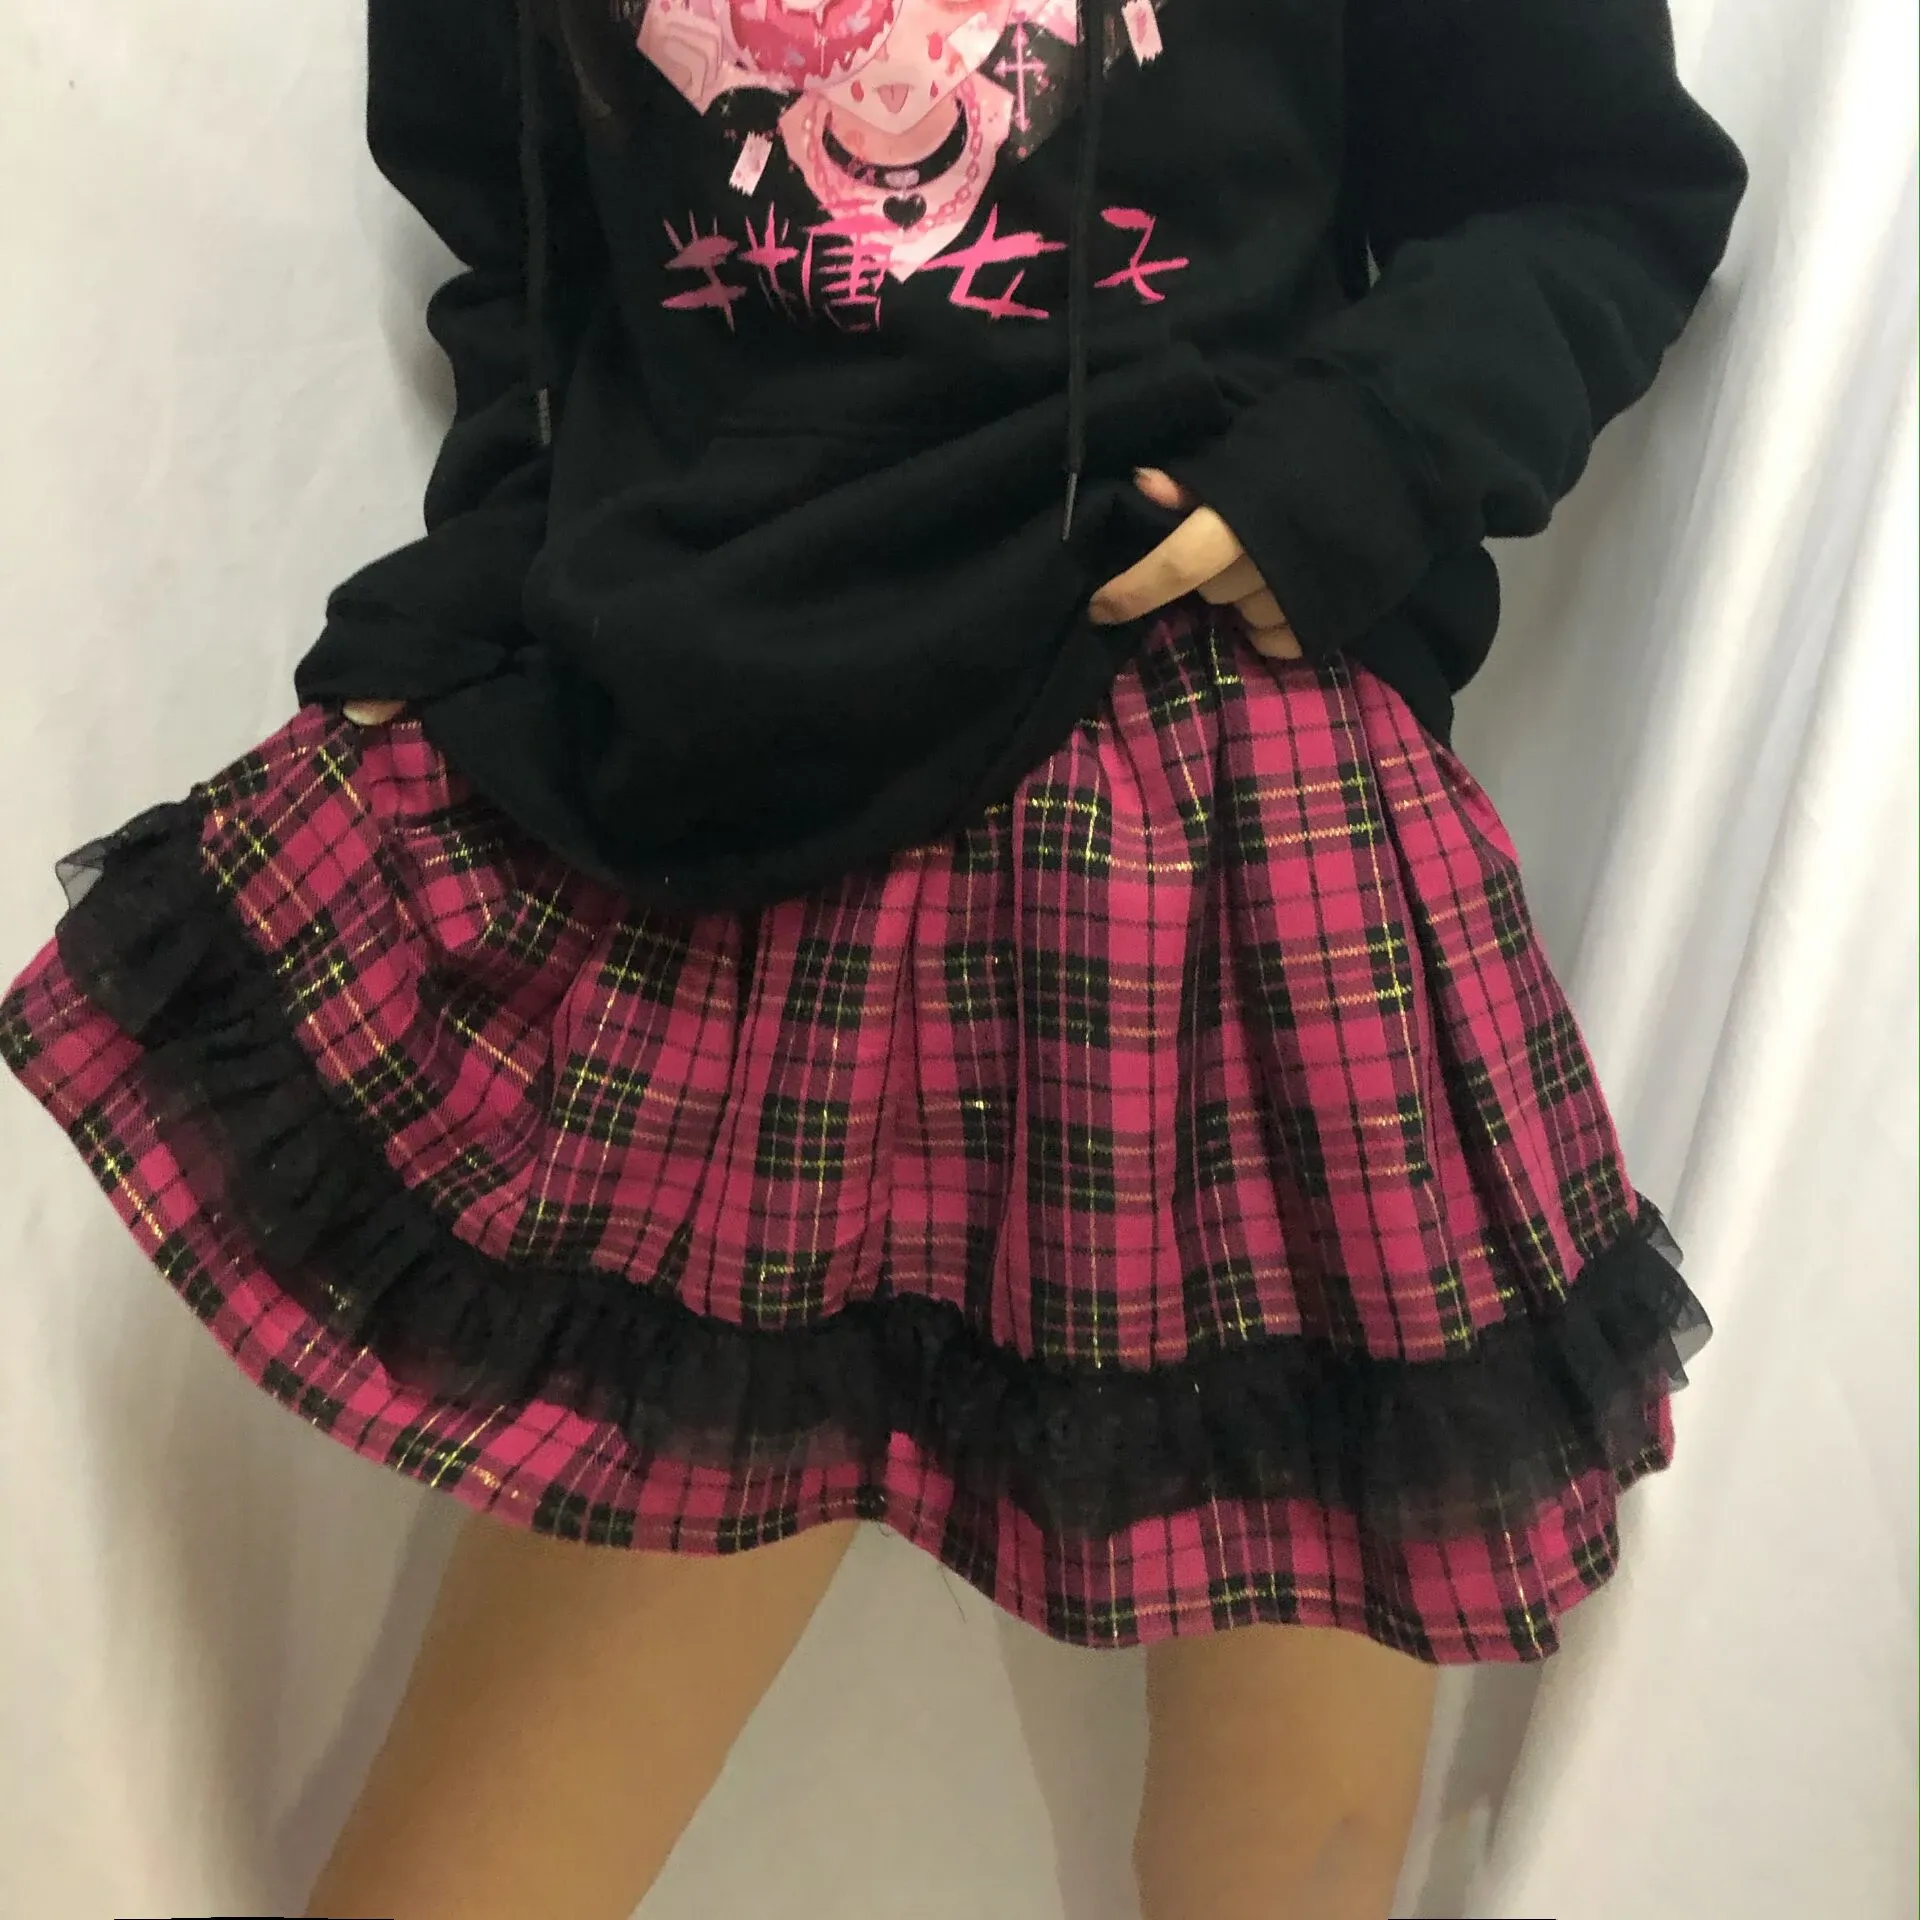 Pullovers goth koronka lolita mini spódnica kobieta kawaii różowa plisowana plisowana pastel Got Egirl ubrania ciemne akademickie spódnice estetyczne